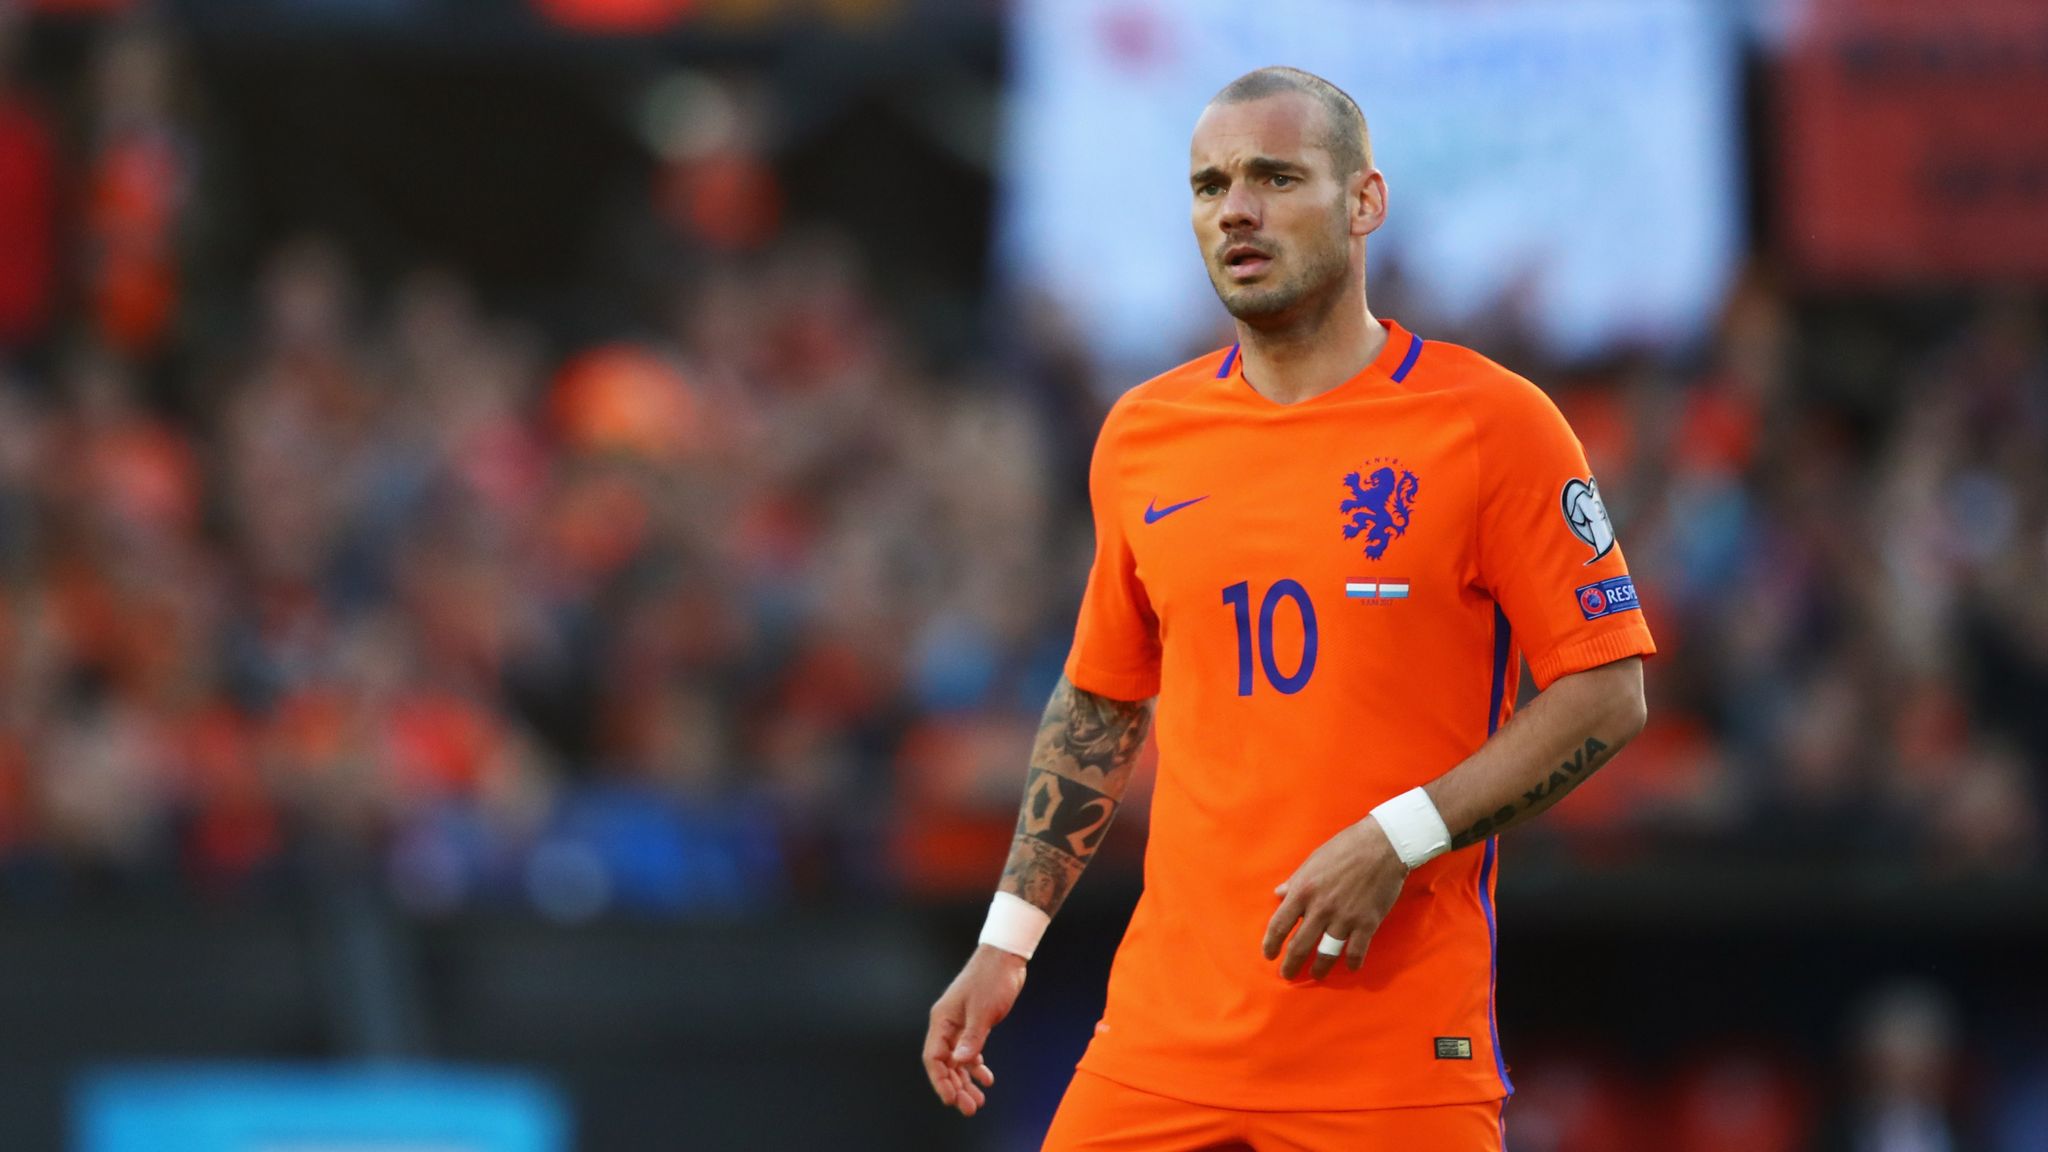 Sneijder Chỉ Ra Cầu Thủ Gây Lãng Phí Tiền Bạc Của Chelsea 643bb78a6e77f.jpeg